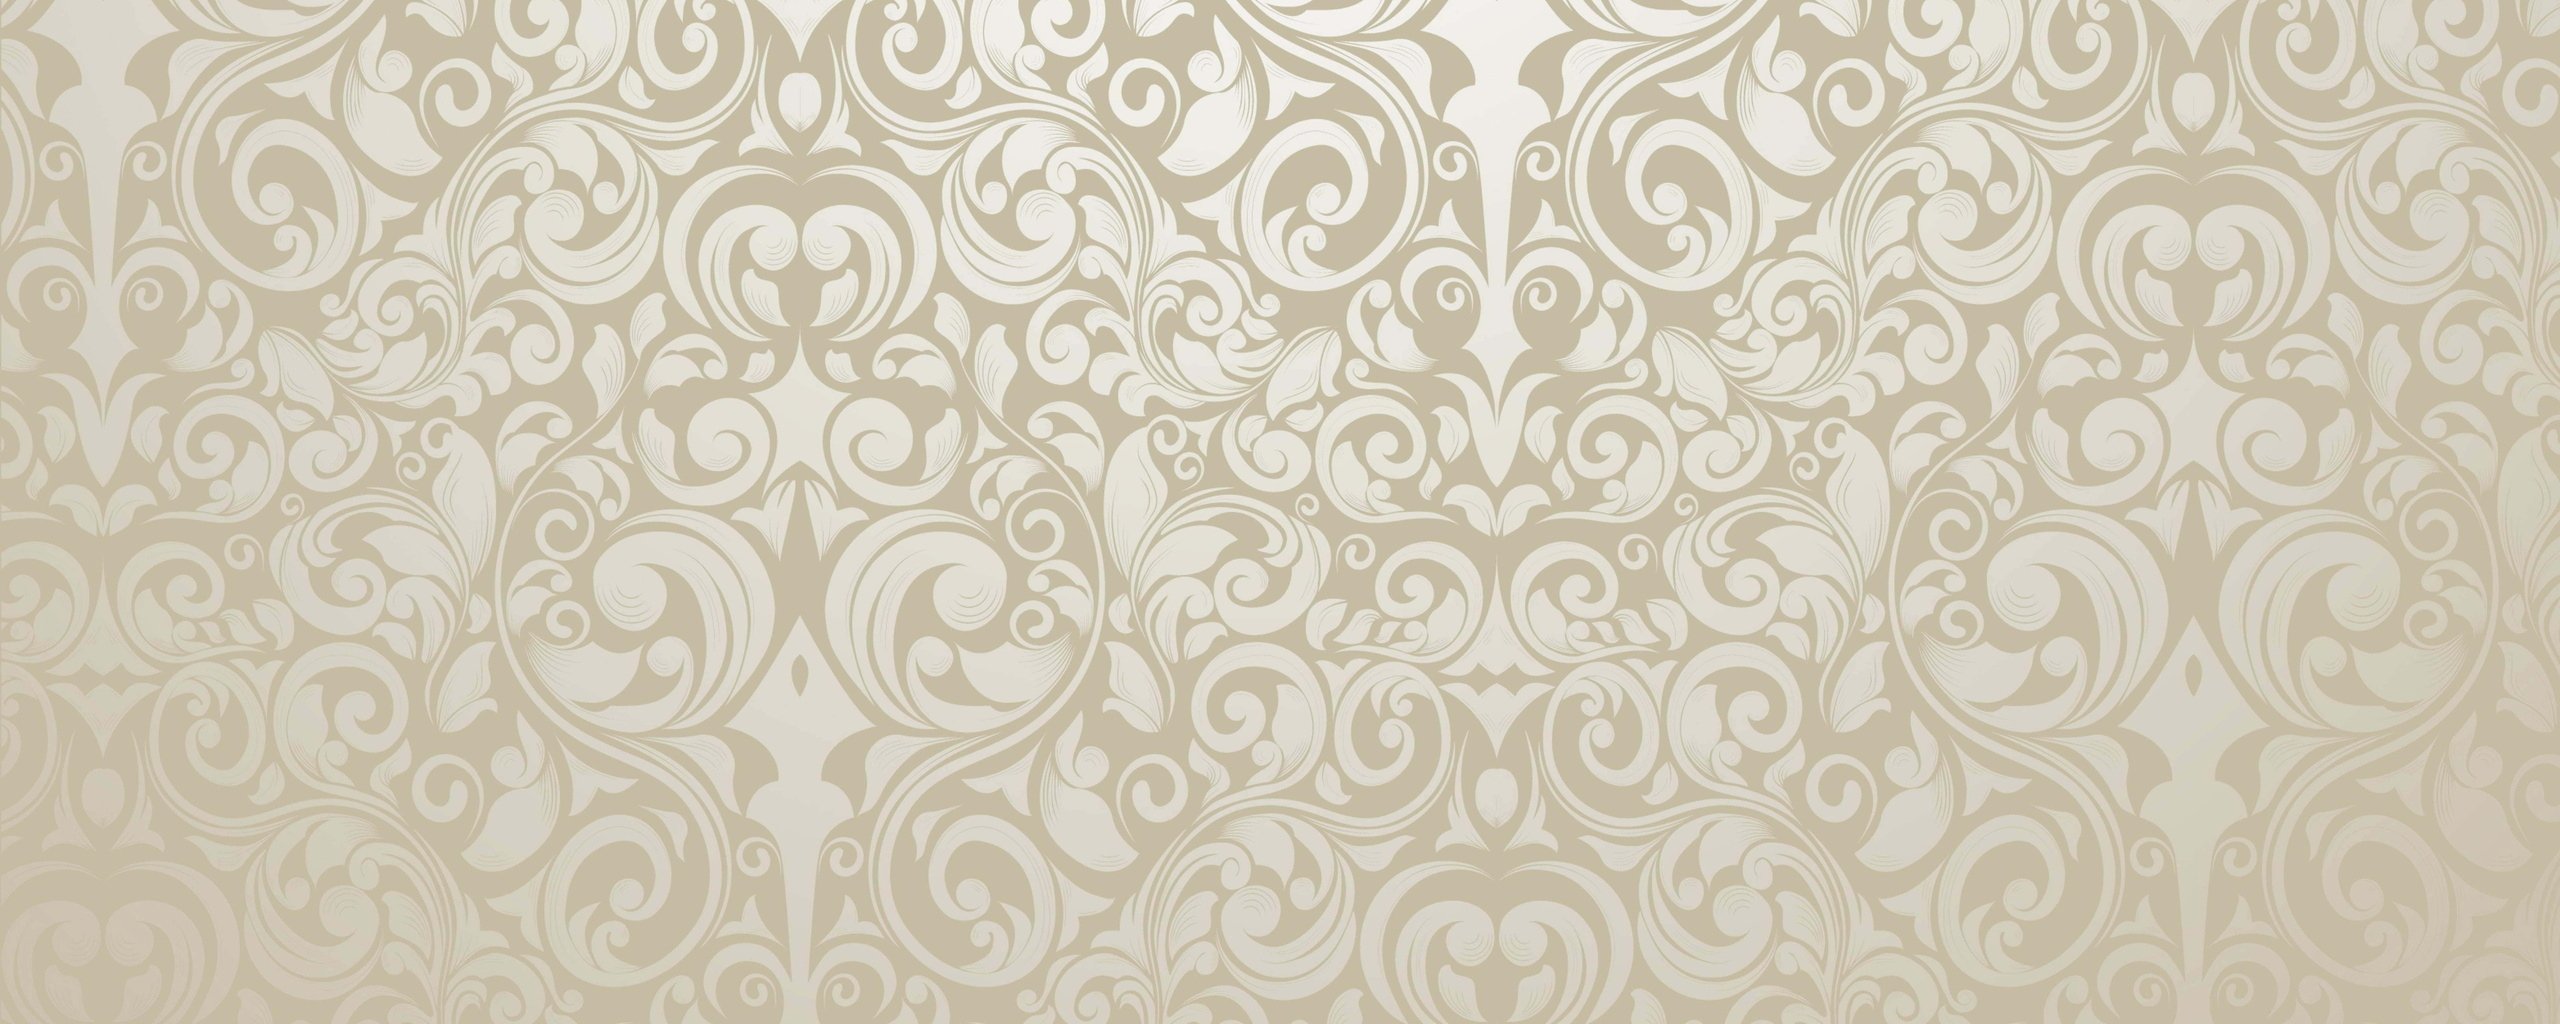 Download Wallpaper 2560x1024 Wall Wallpaper Glitter Patterns Dual 2560x1024